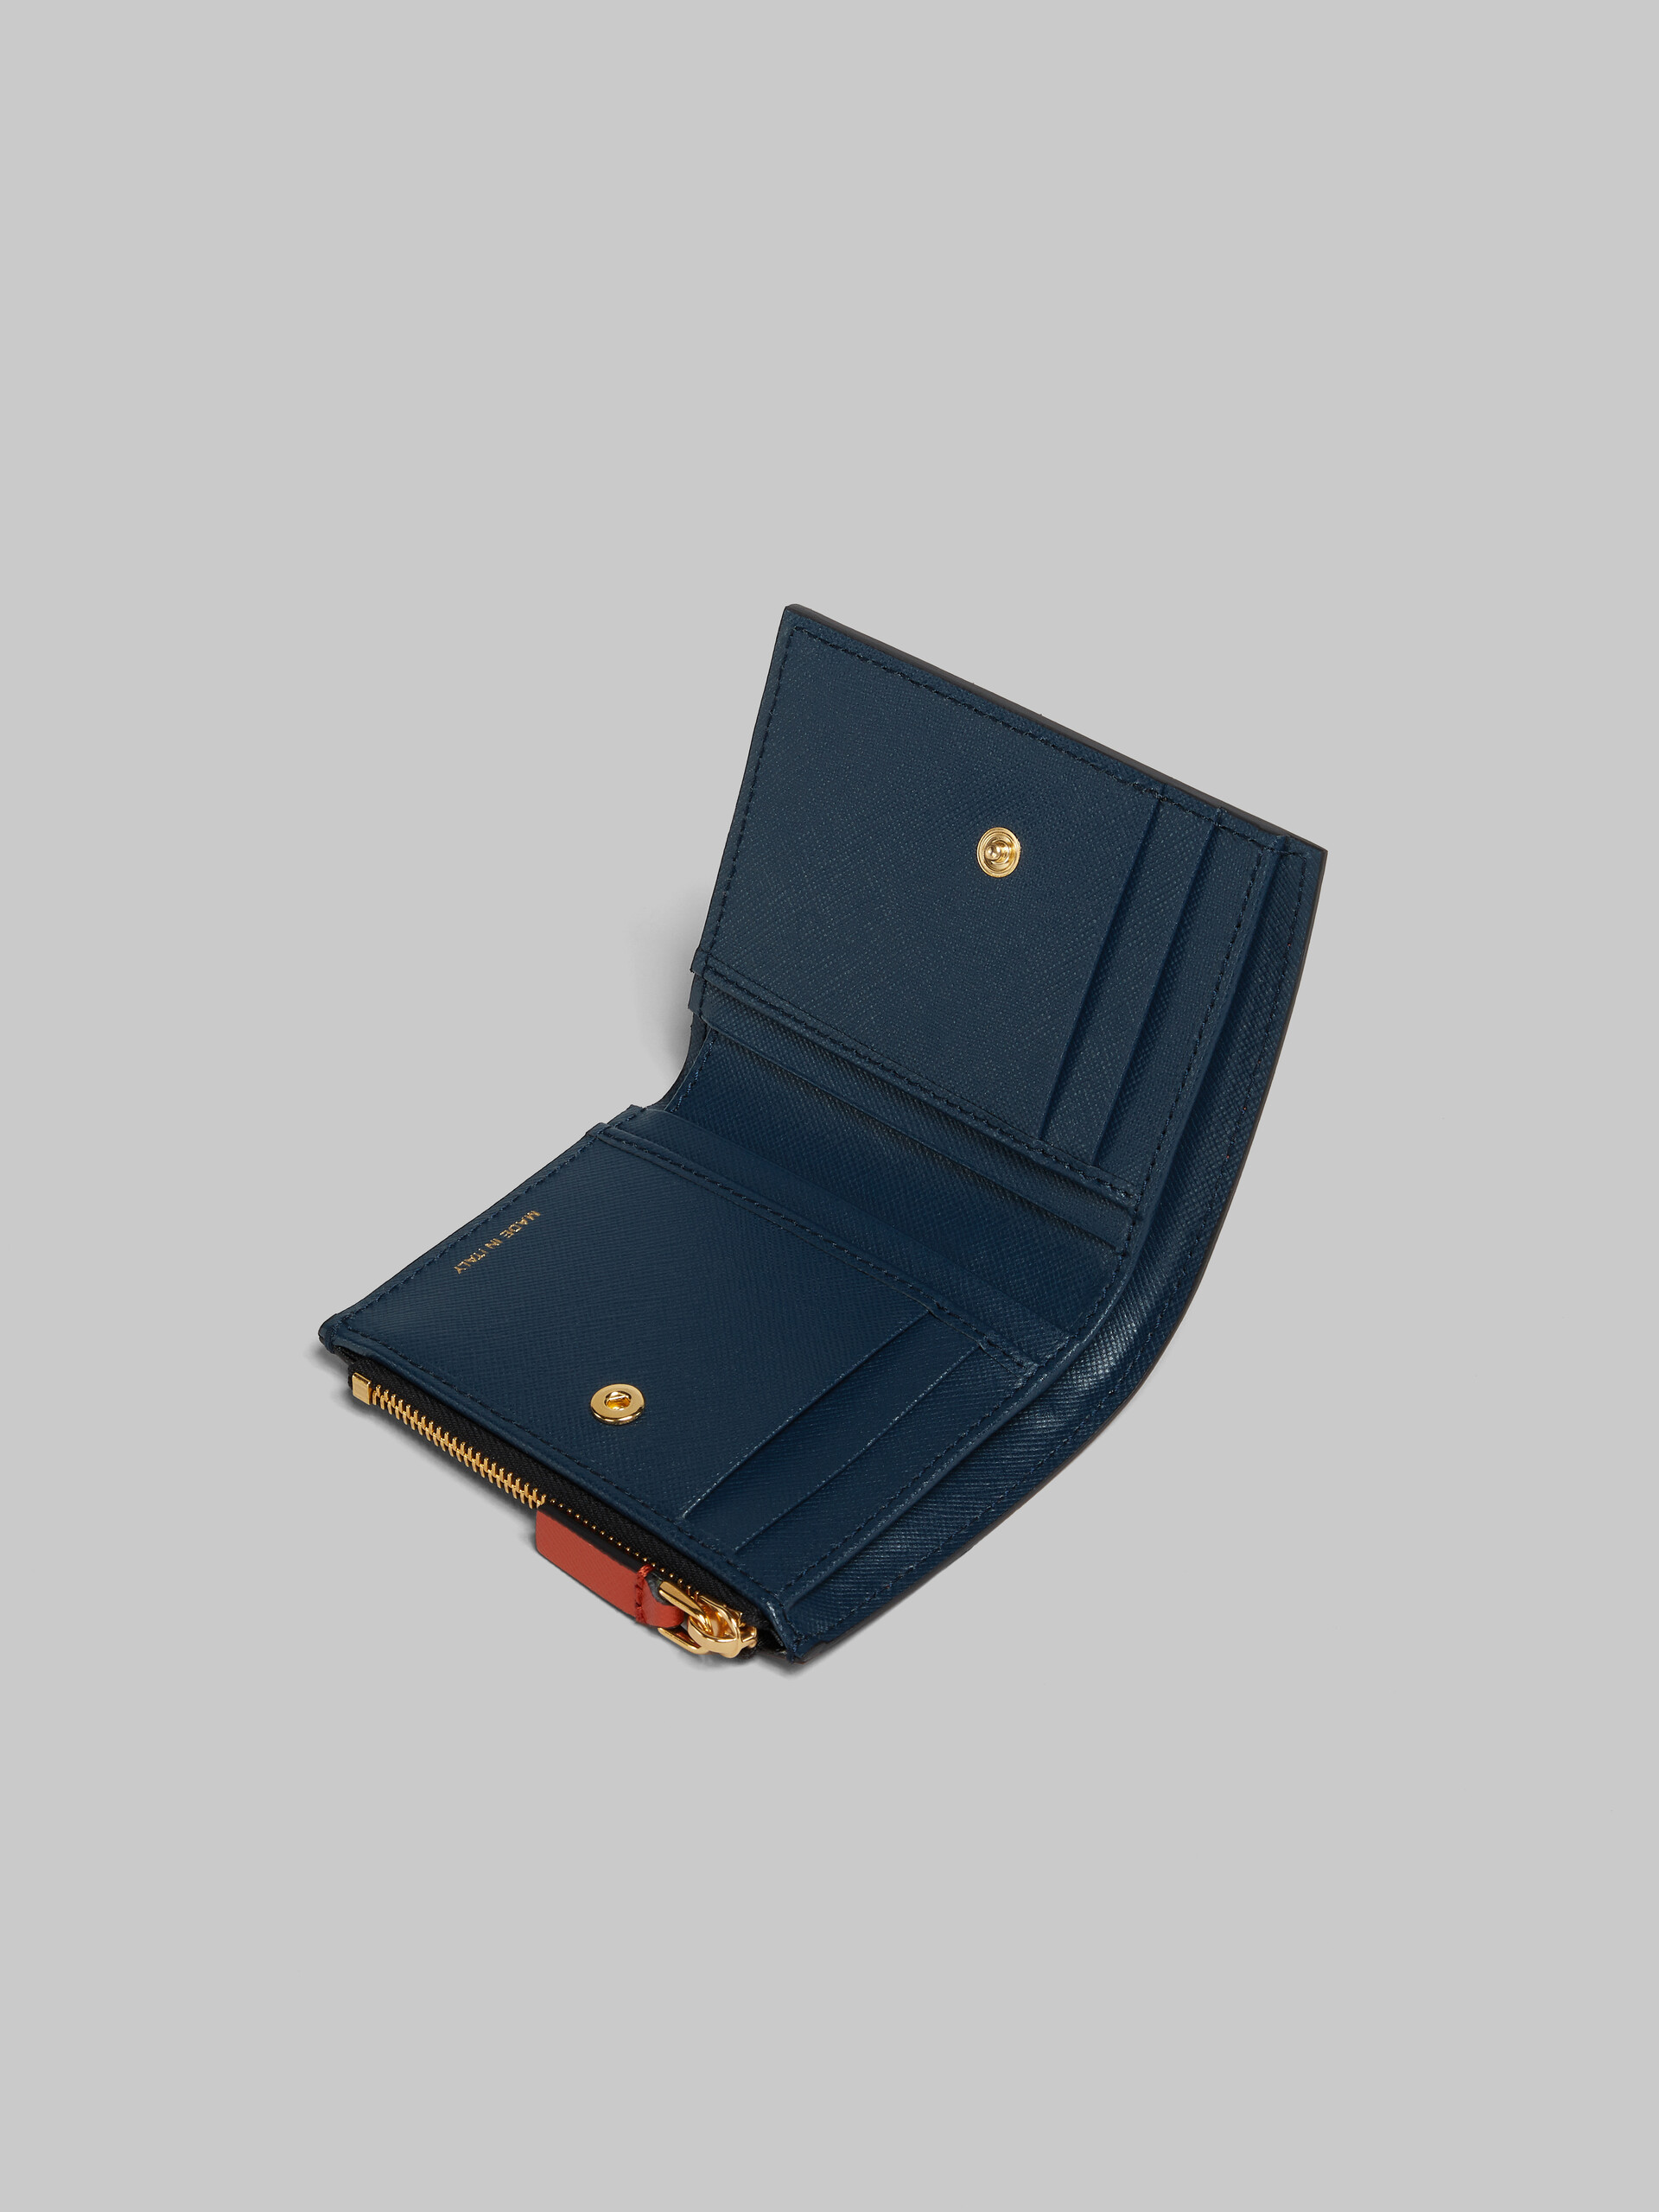 オレンジ クリーム ディープブルー サフィアーノレザー製 二つ折りウォレット - 財布 - Image 4